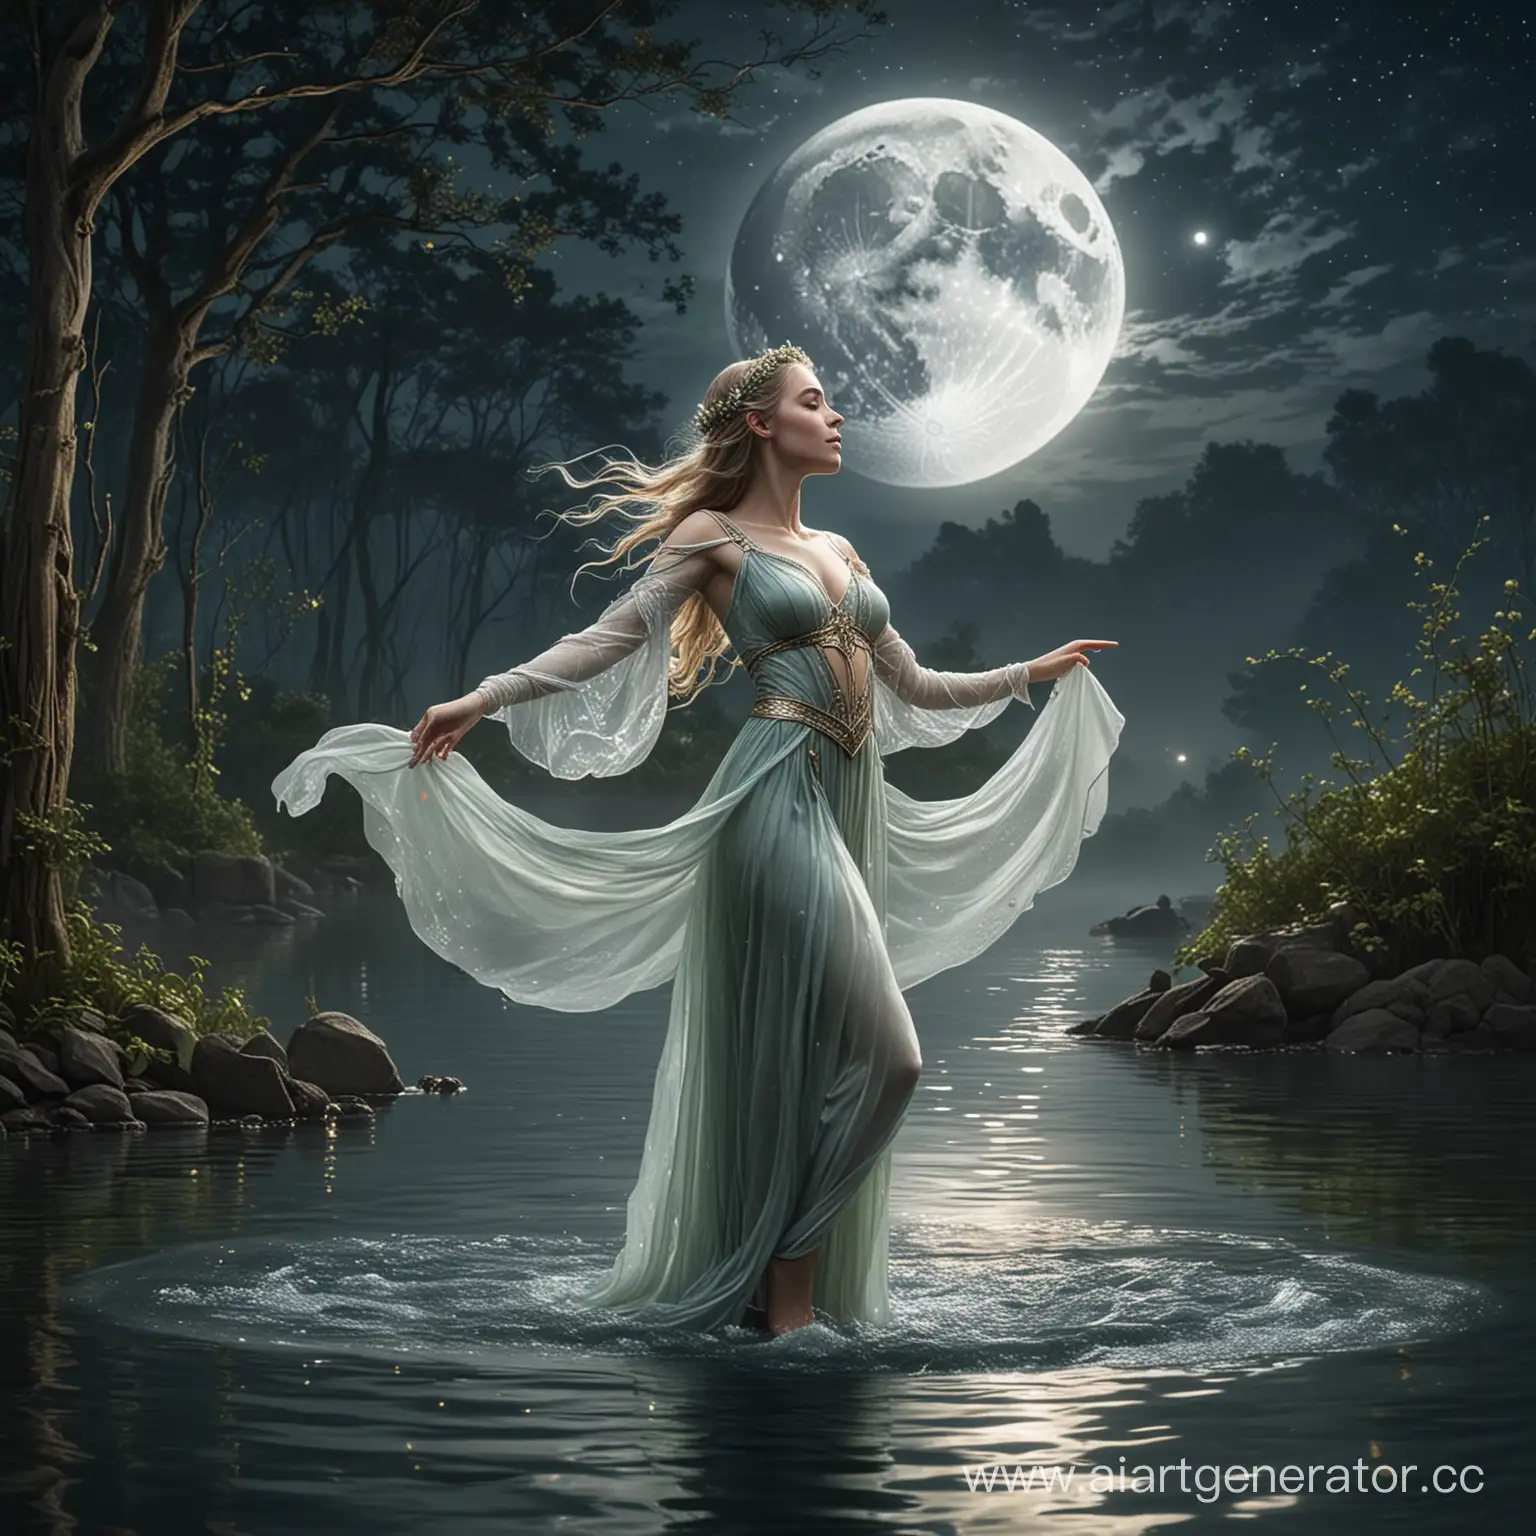 Эльфийская принцесса танцует на воде под луной 